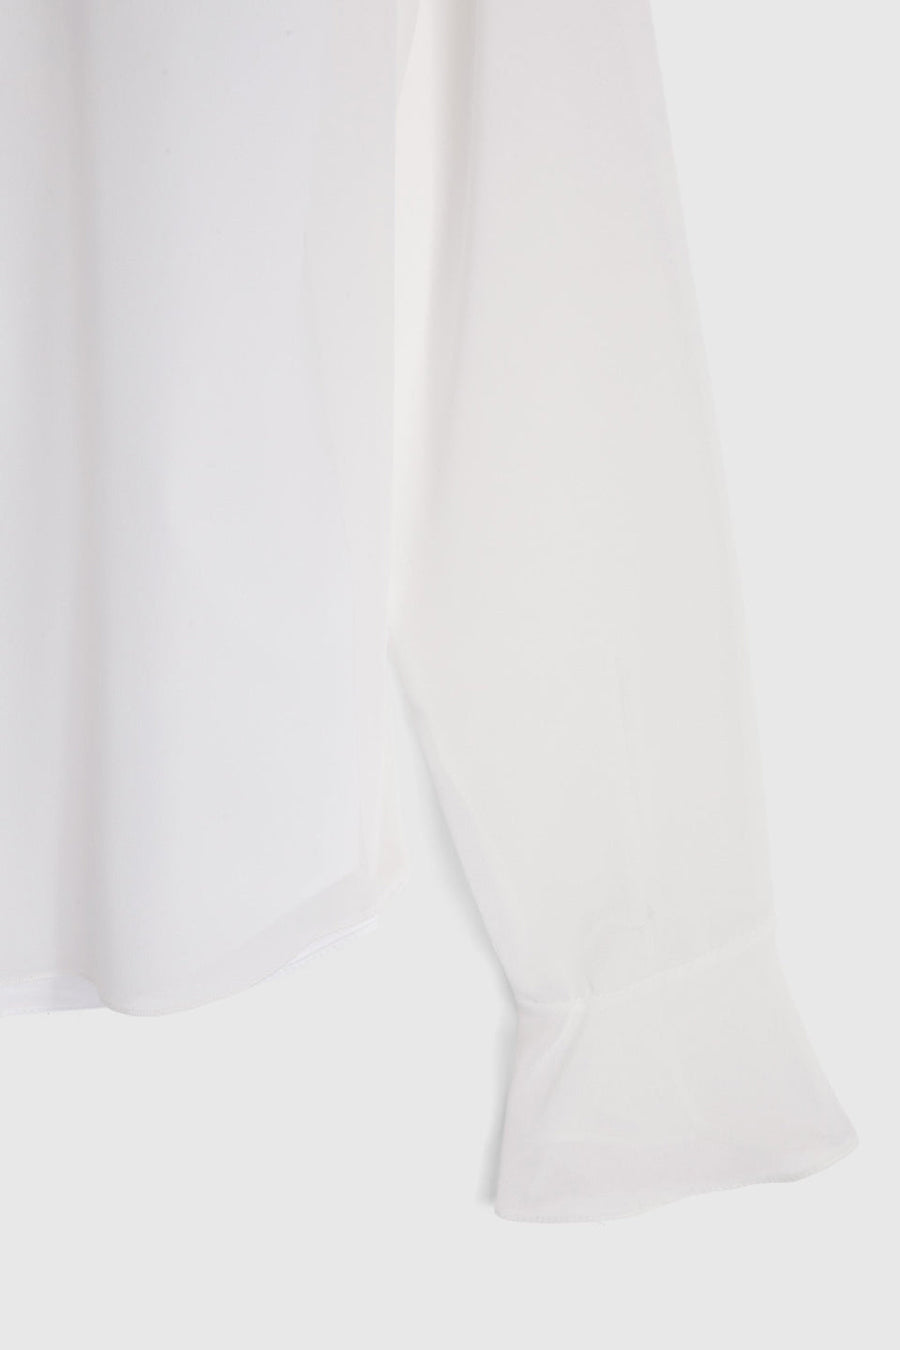 rochas shirt in chiffon cotton poplin white